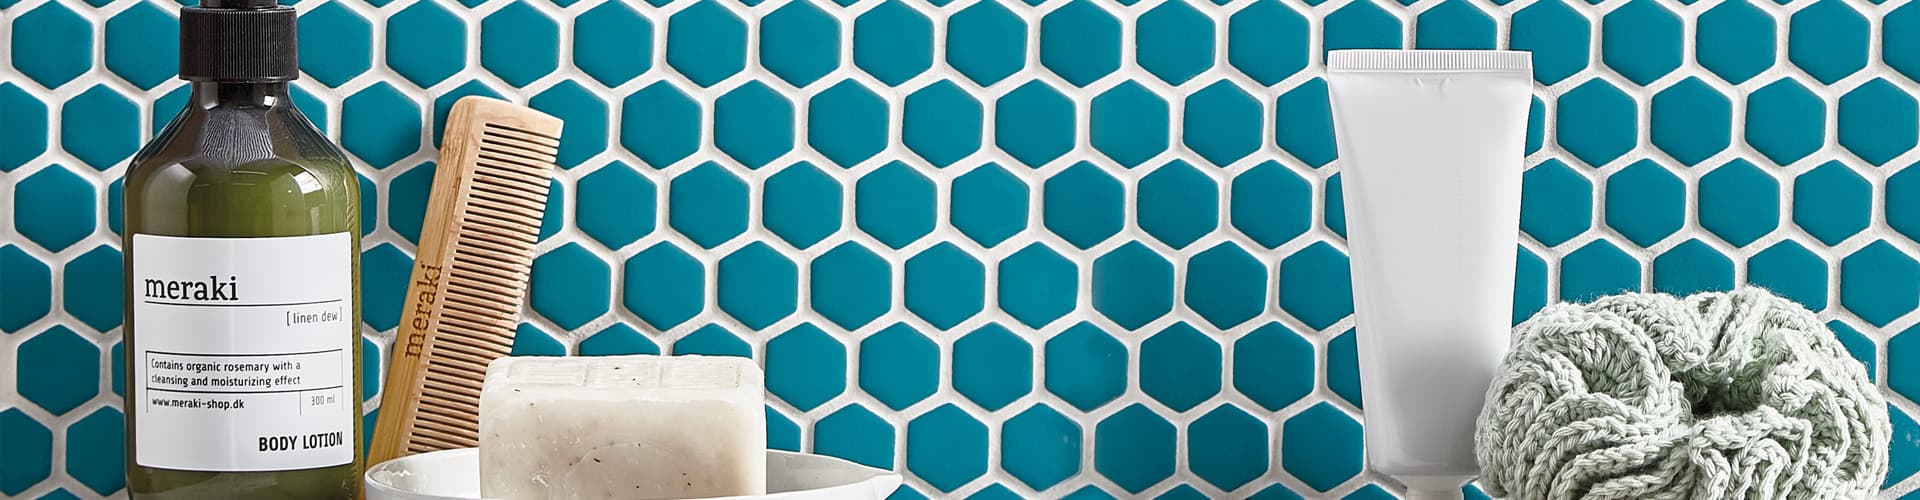 Hexagonal Wall Tiles